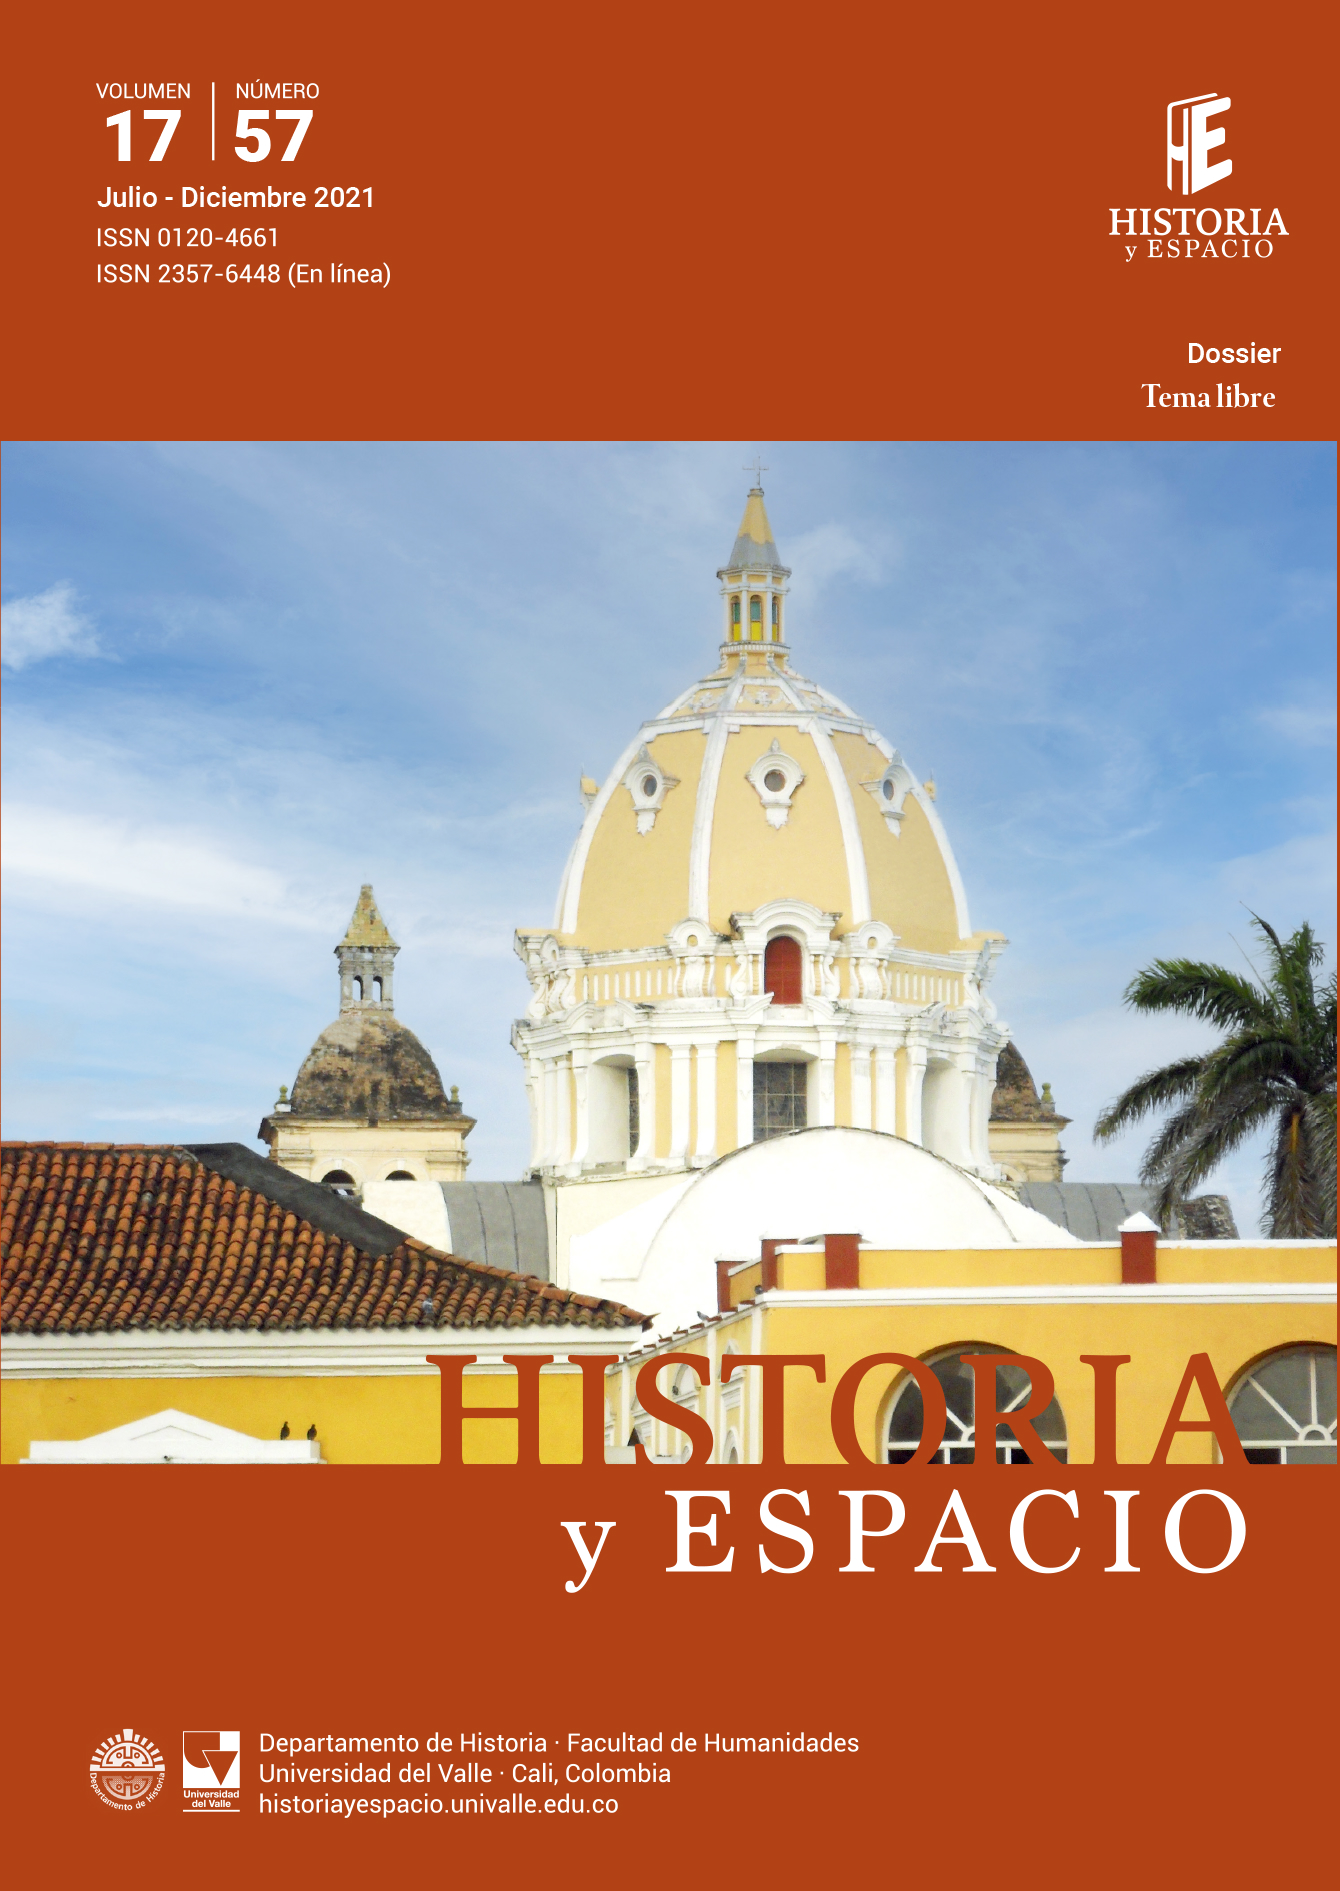 Orígenes de los adventistas en Bucaramanga, Colombia 1928-1946. Conversión  y hábitos de santidad | Historia y Espacio